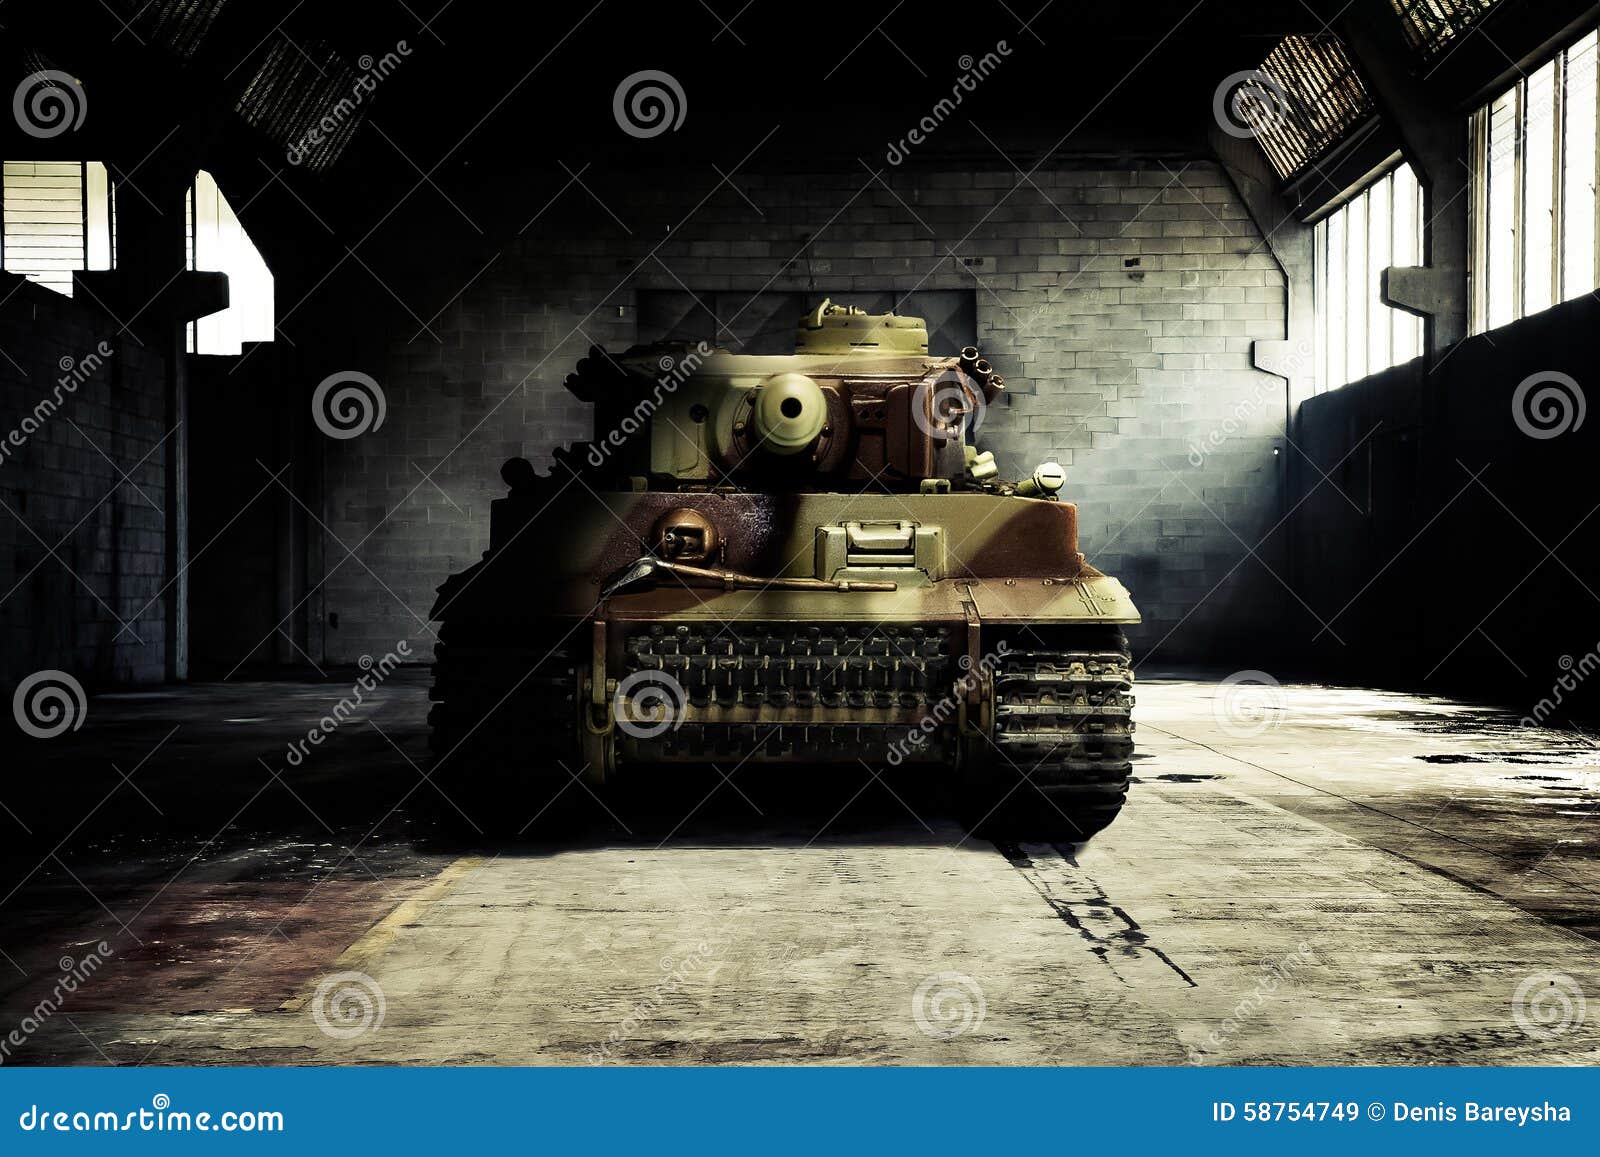 COD Black Ops Cold War Tank HD 4K Wallpaper #8.7